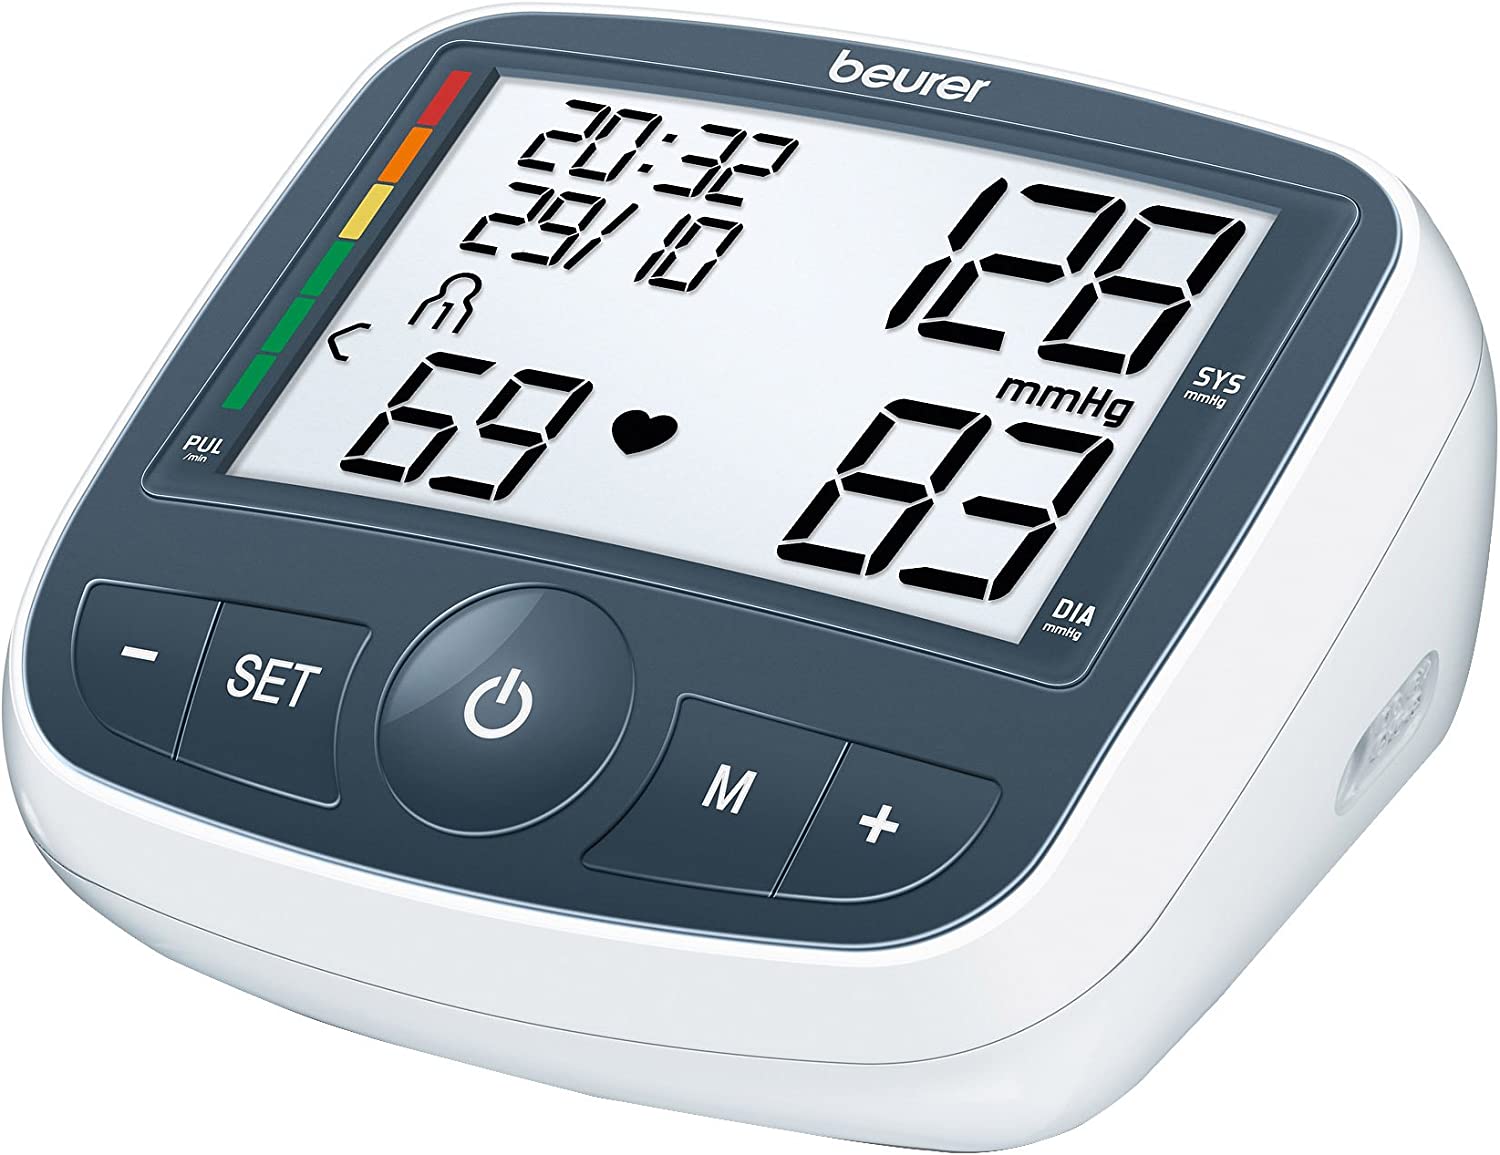 Beurer - BM 40 Blood Pressure Monitor